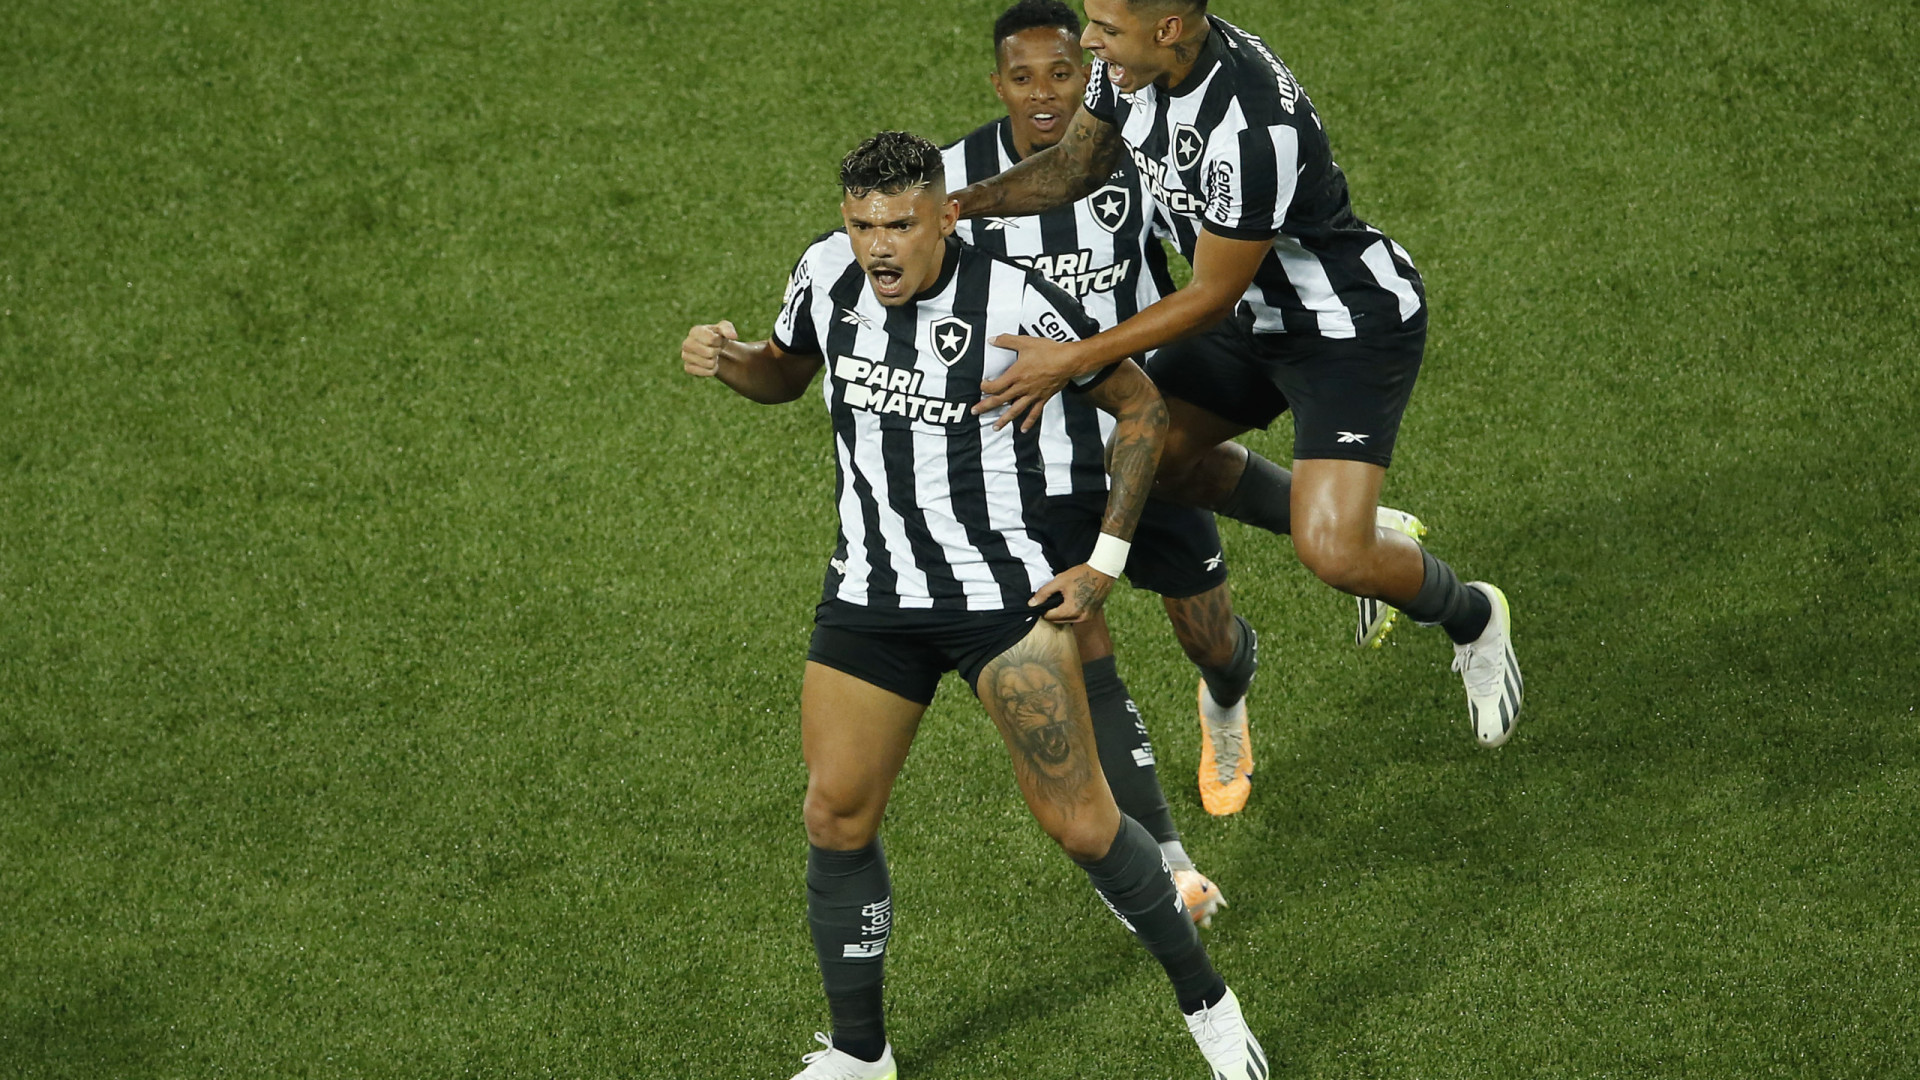 Botafogo apenas empata com Goiás e mantém vantagem de sete pontos